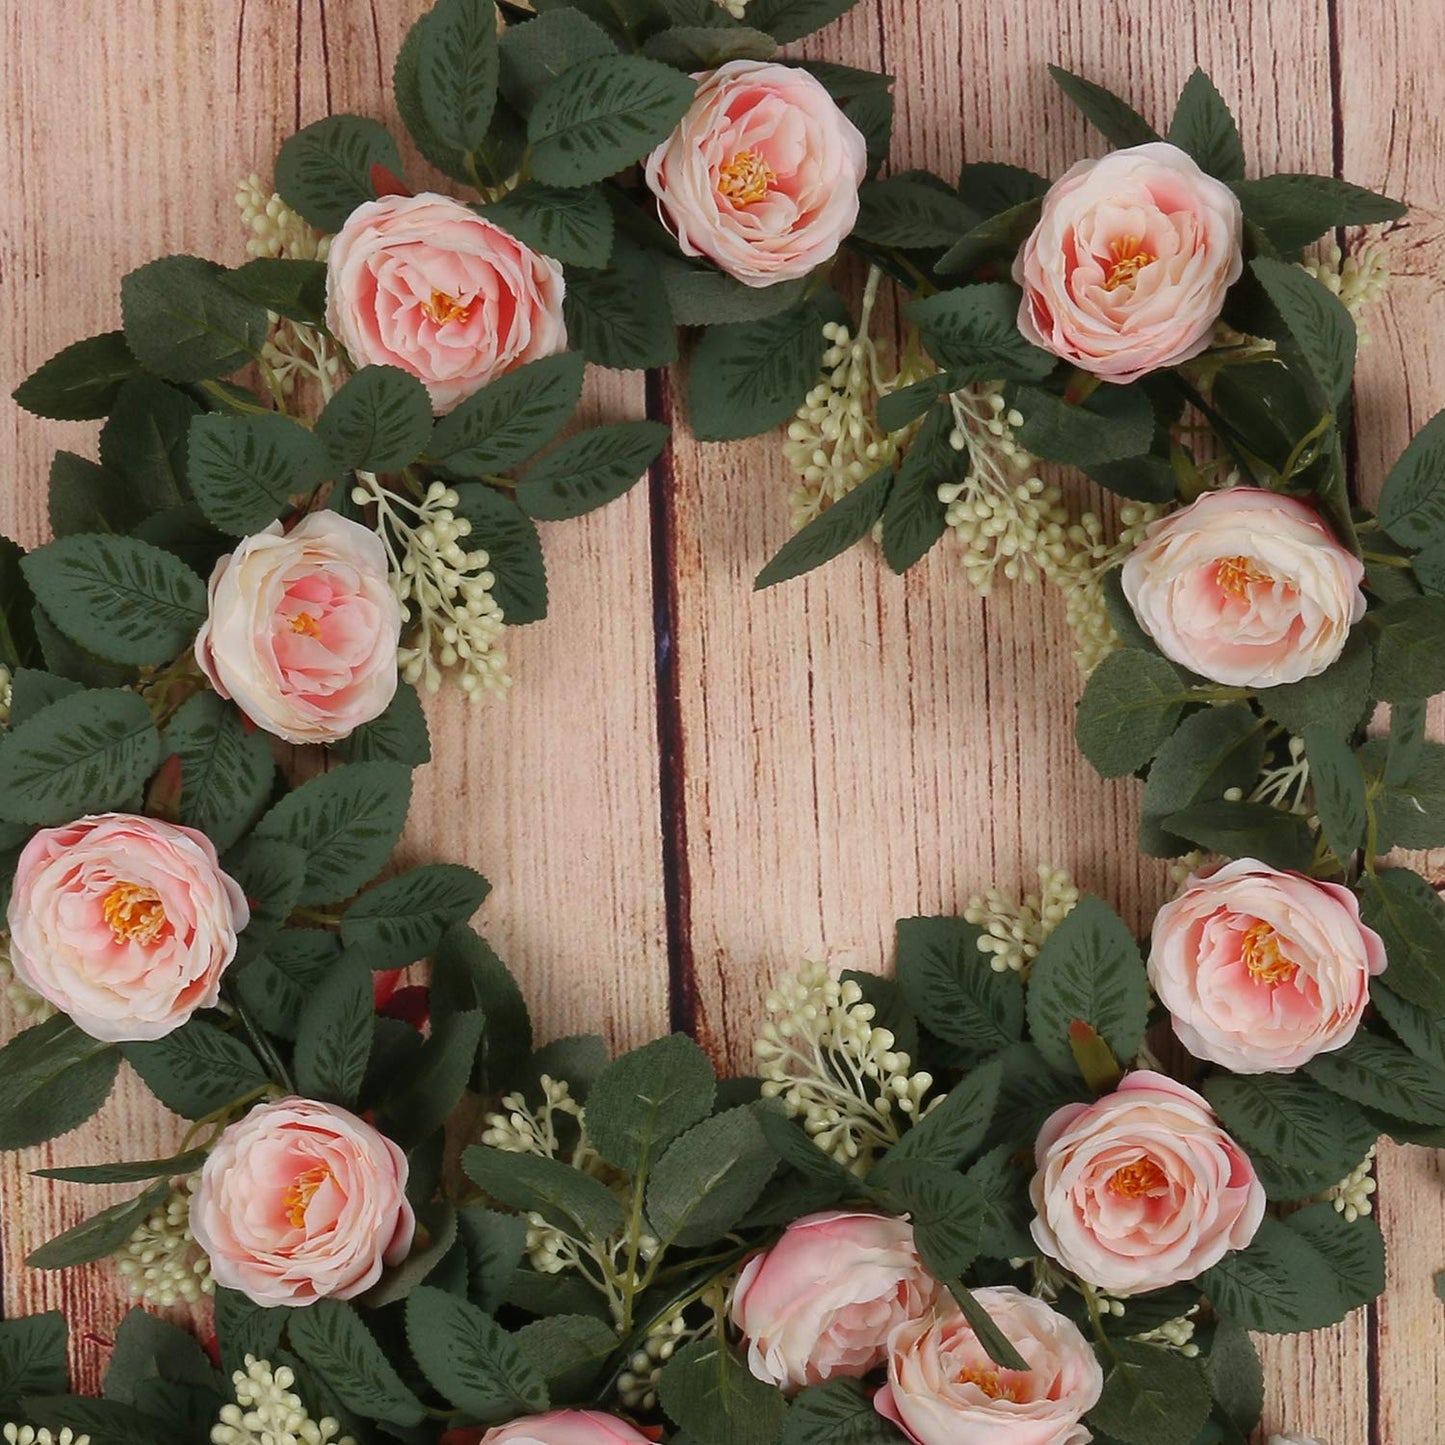 U'Artlines Juego de 2 (4,0m en Total) Guirnalda de Rosas Artificiales Flores Colgantes Guirnalda Flores y Plantas Artificiales para la Decoración del Jardín de la Boda del Hotel(Rosa)